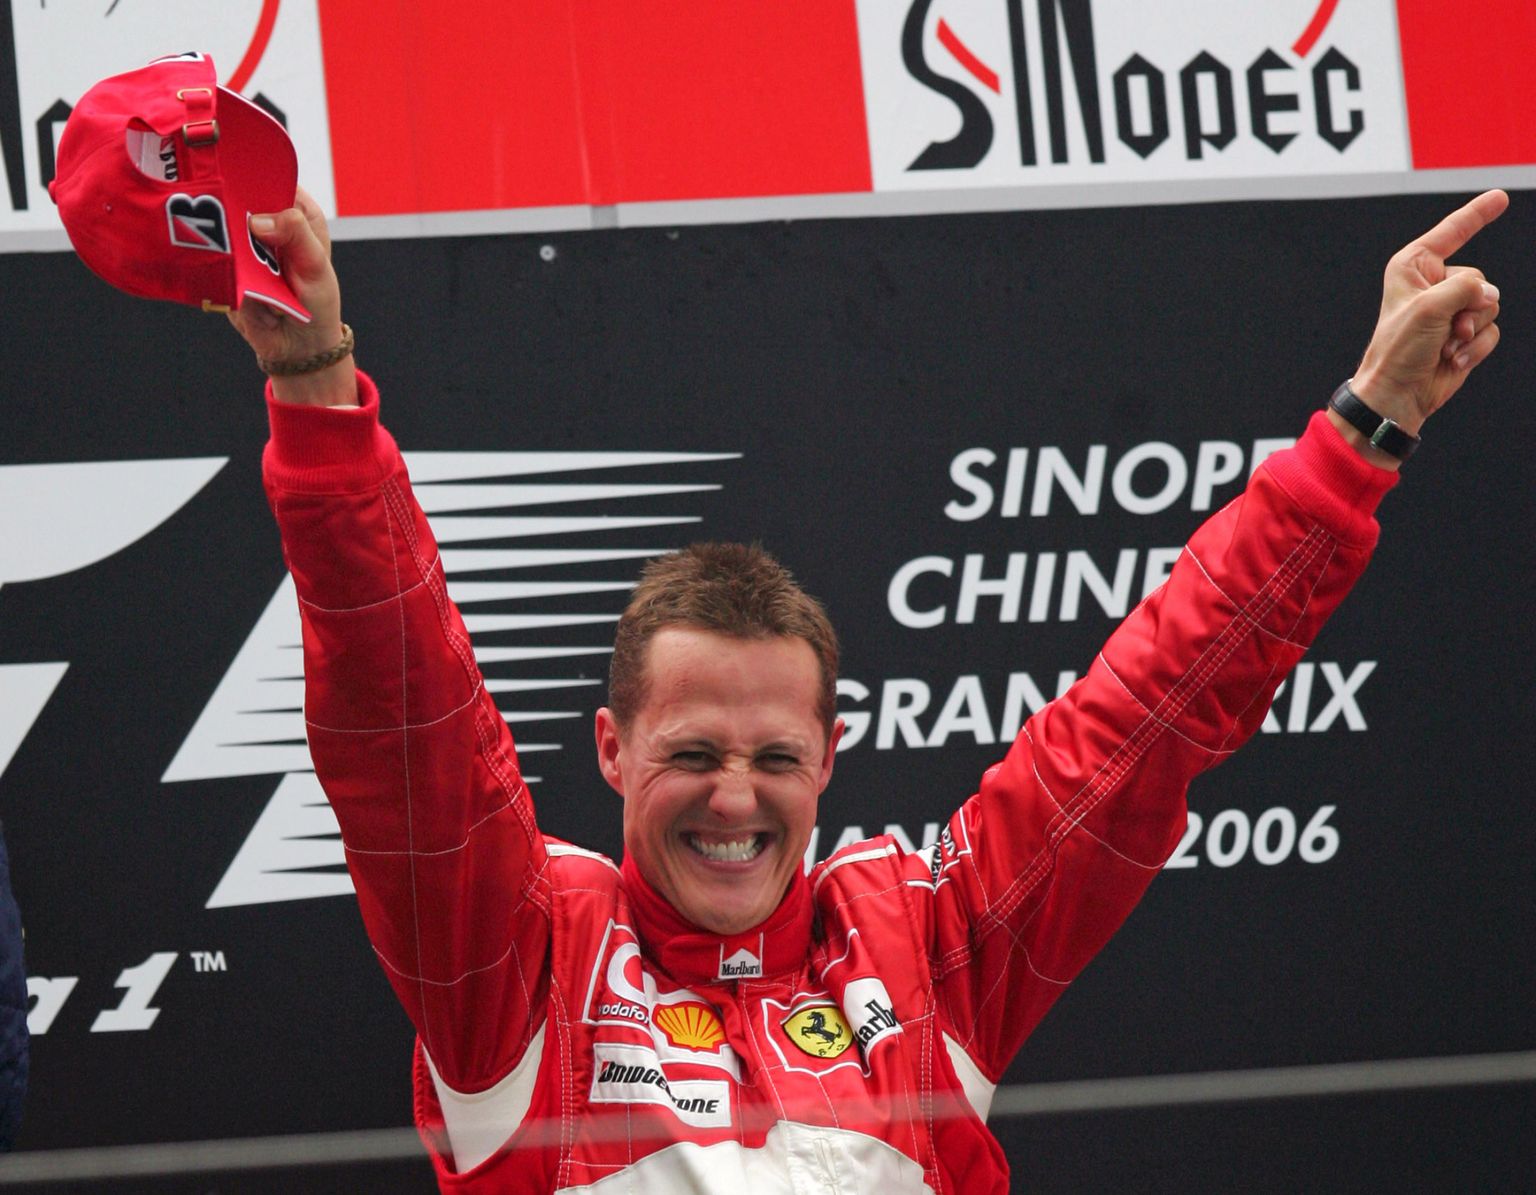 Michael Schumacher nautis karjääri jooksul võidurõõmu 91 puhul ja viimast korda 2006. aasta 1. oktoobril.